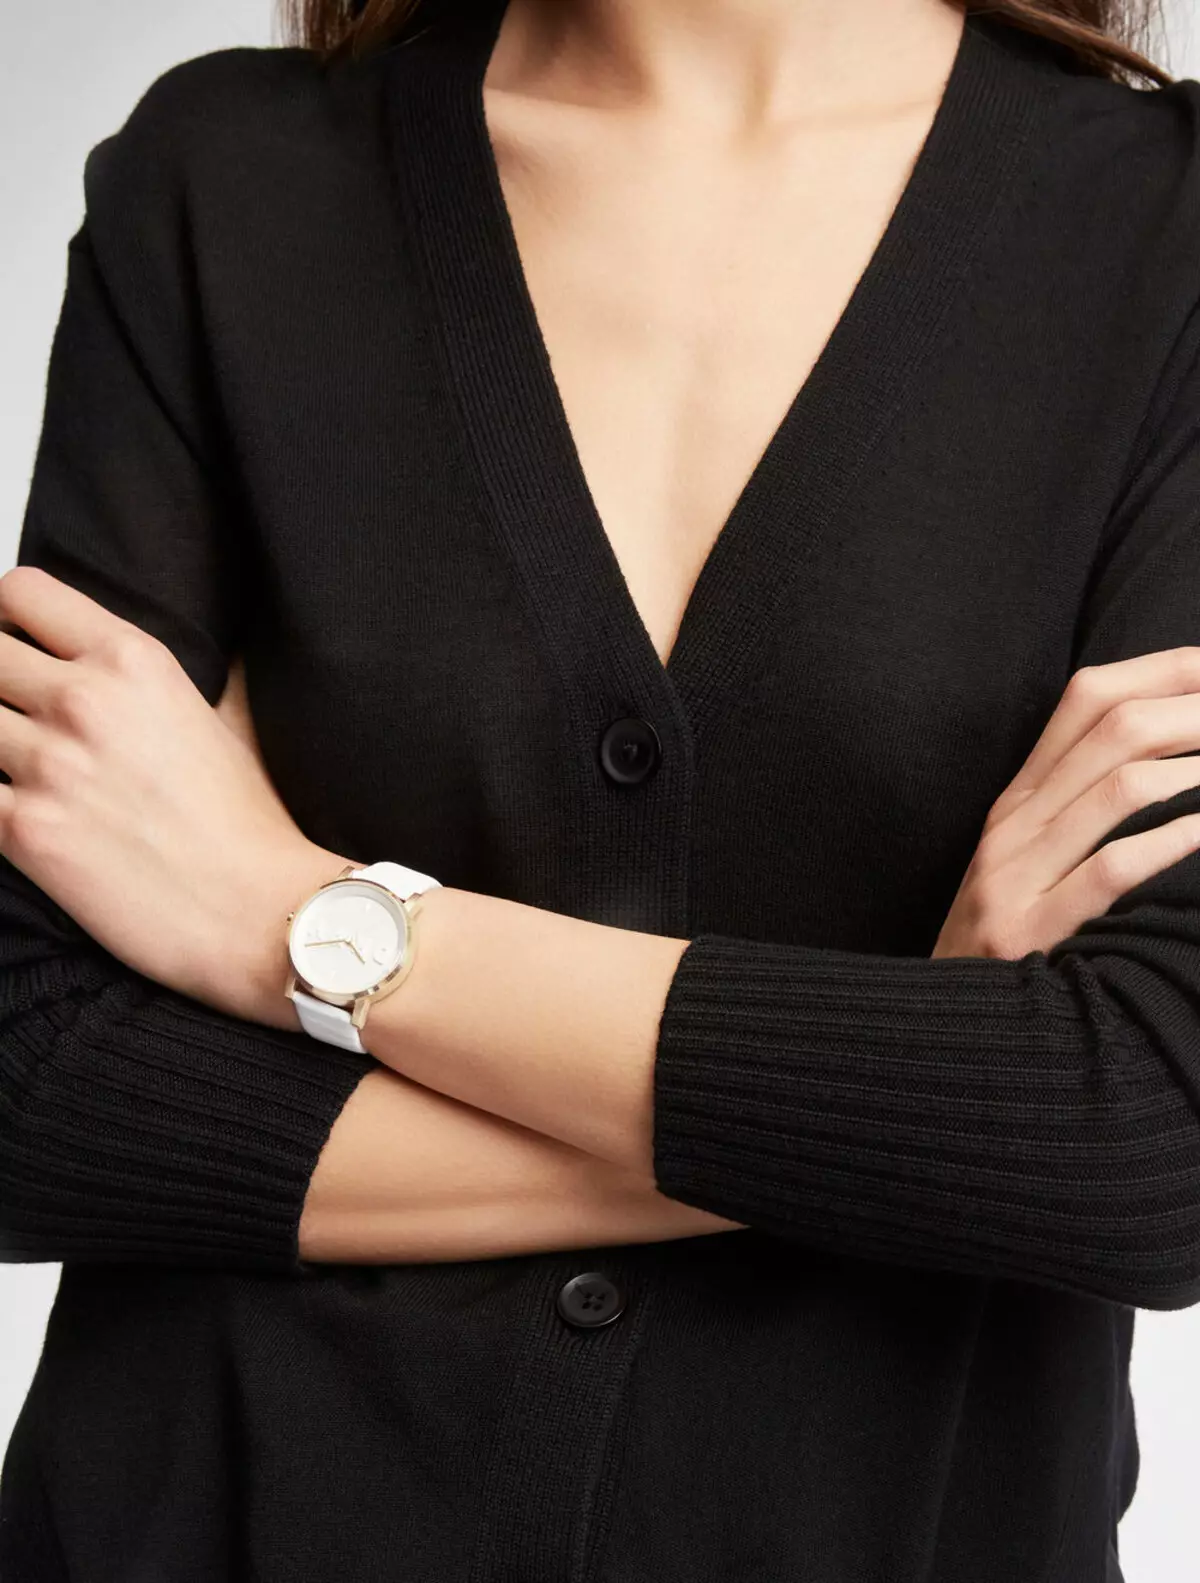 Relógio das mulheres com uma pulseira de cerâmica (73 fotos): modelos de pulso branco e preto cerâmico, como encurtá-los e limpar, comentários 3552_62